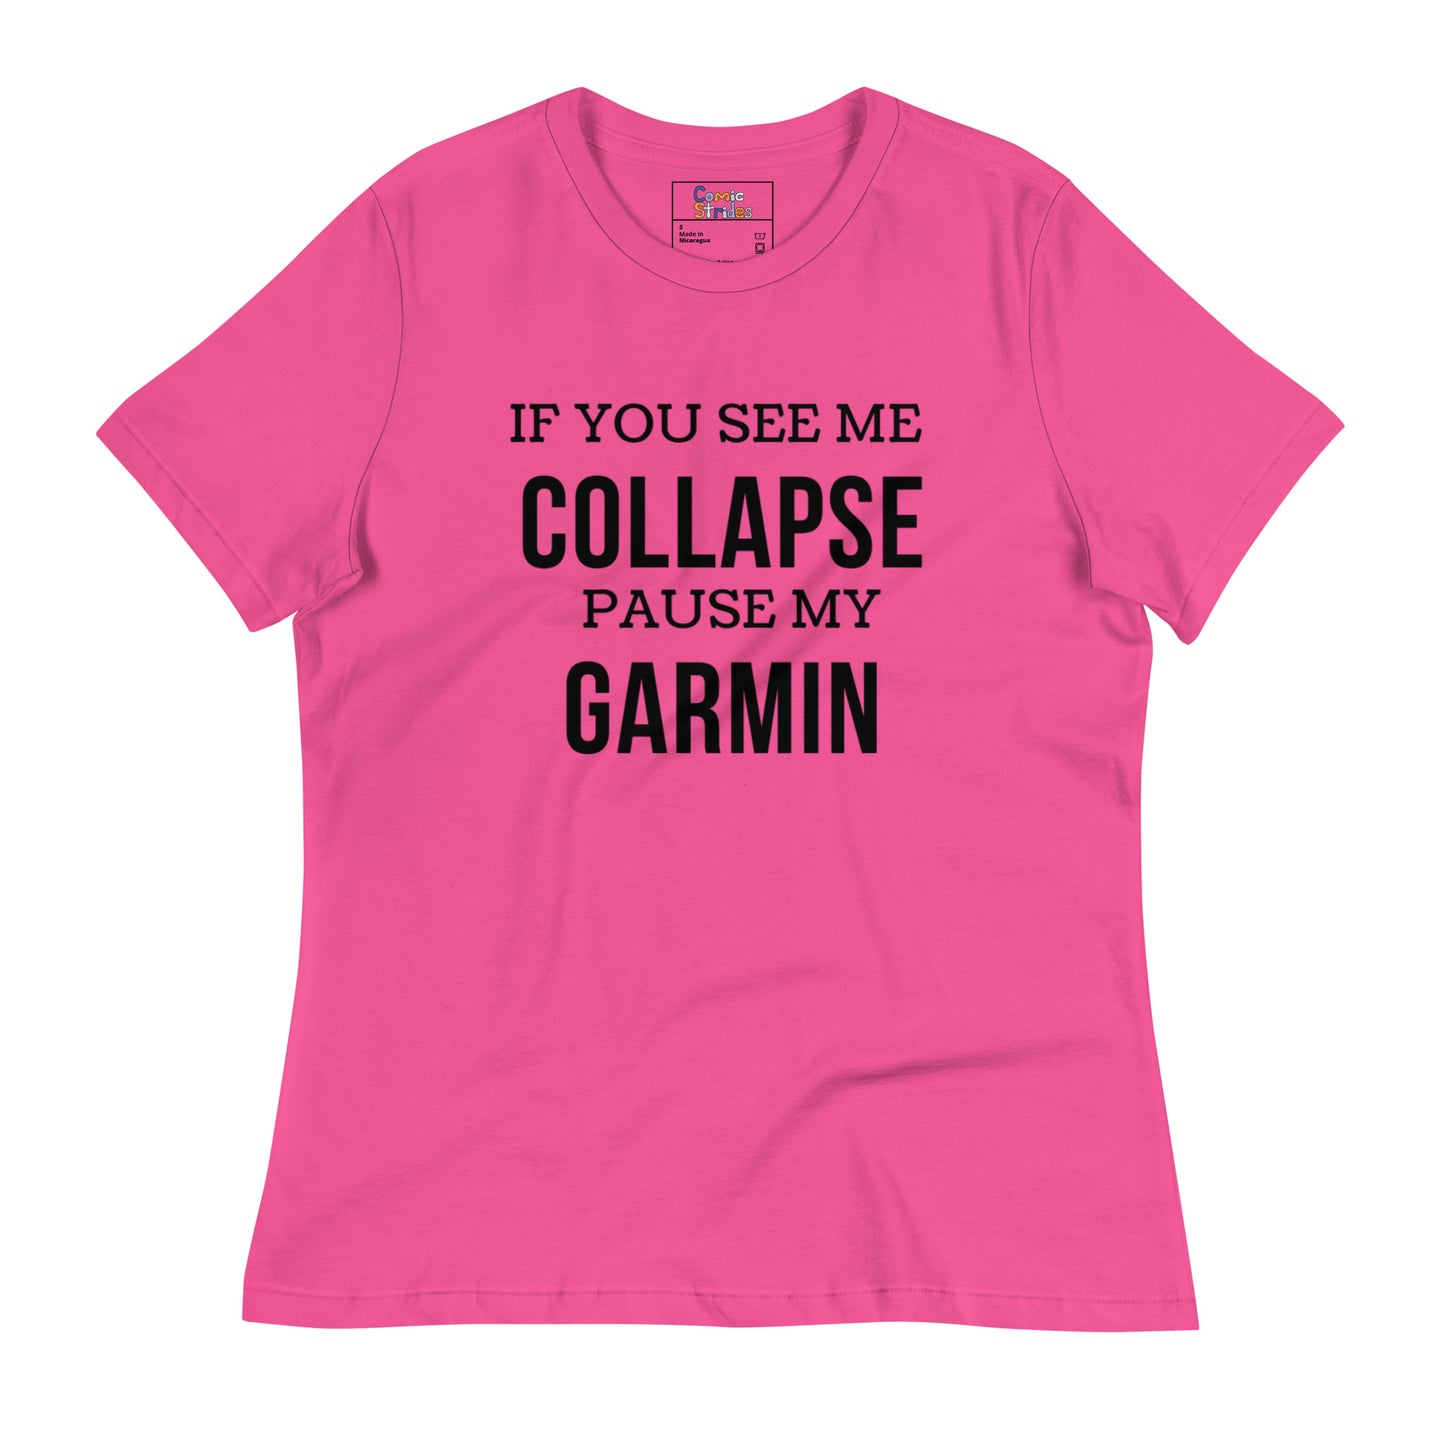 Women's "Pause My Garmin" T-Shirt